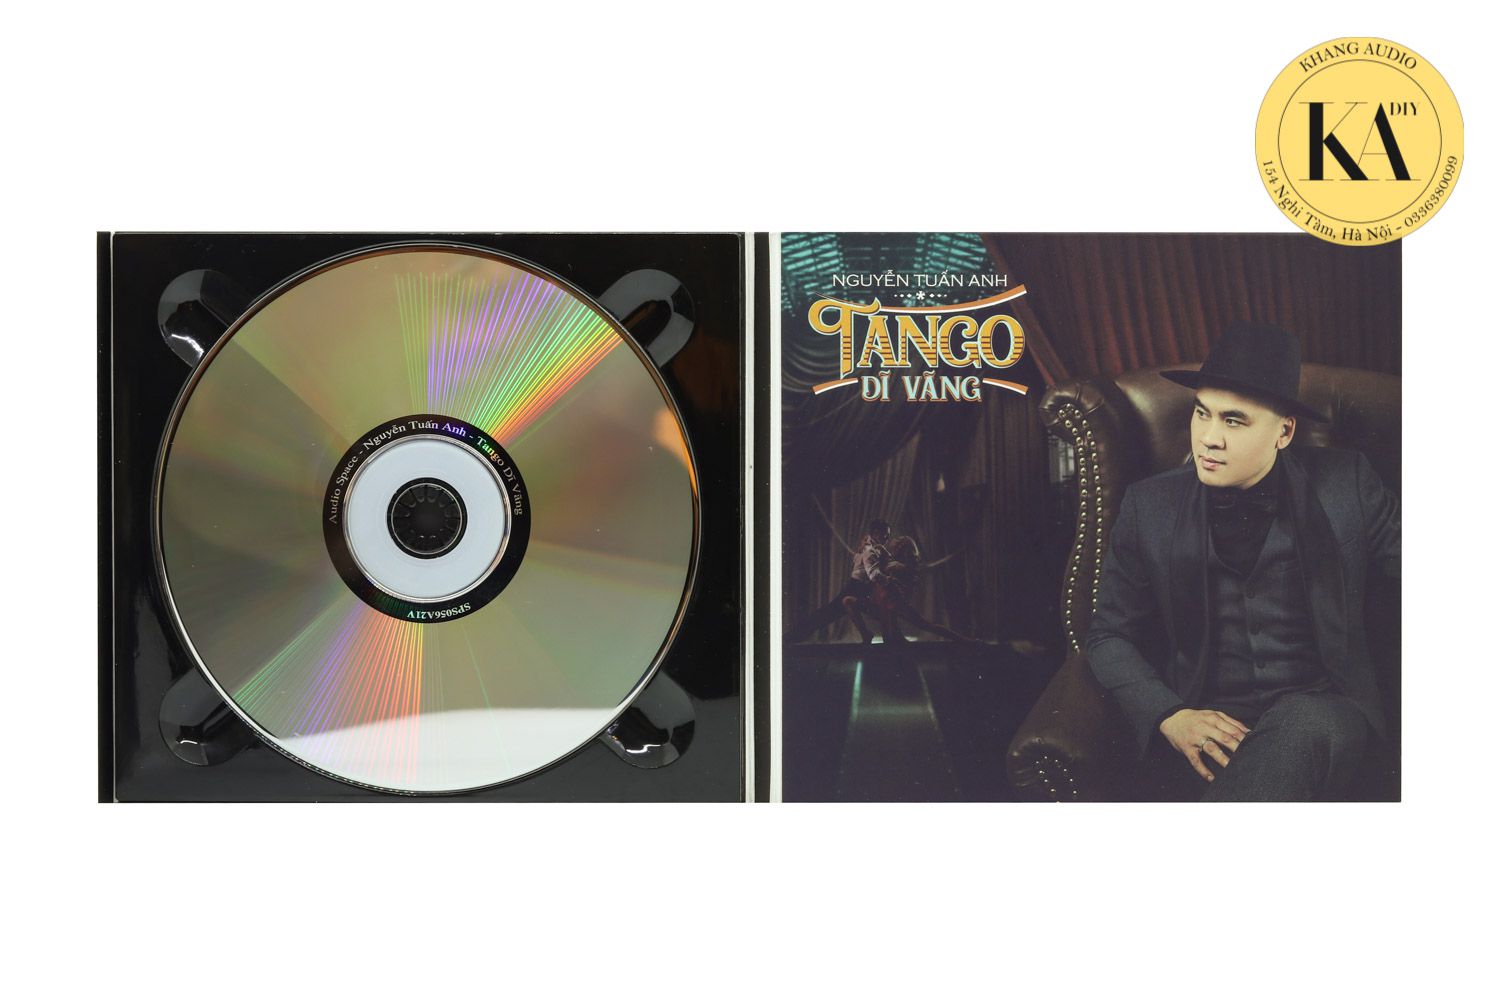 Tango Dĩ Vãng - Nguyễn Tuấn Anh Khang Audio 0336380099